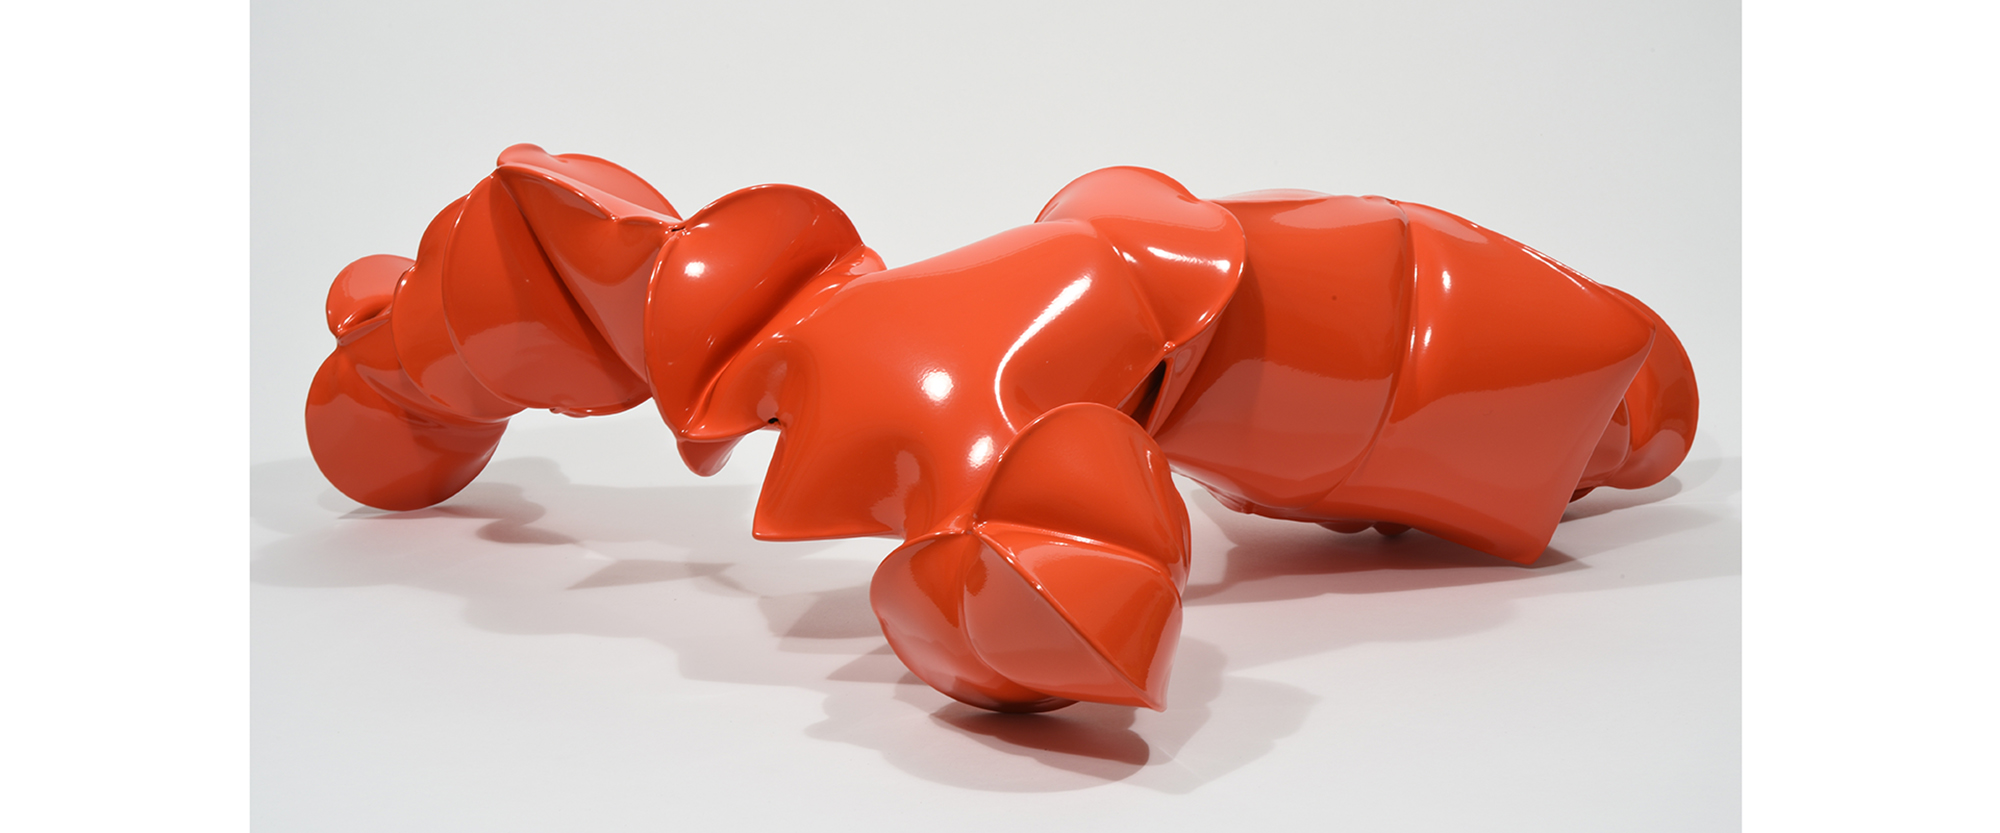 Serotonin Red - 2018, kalt gewälzter Stahl, pulverbeschichtet, 25,5 x 74 x 67 cm